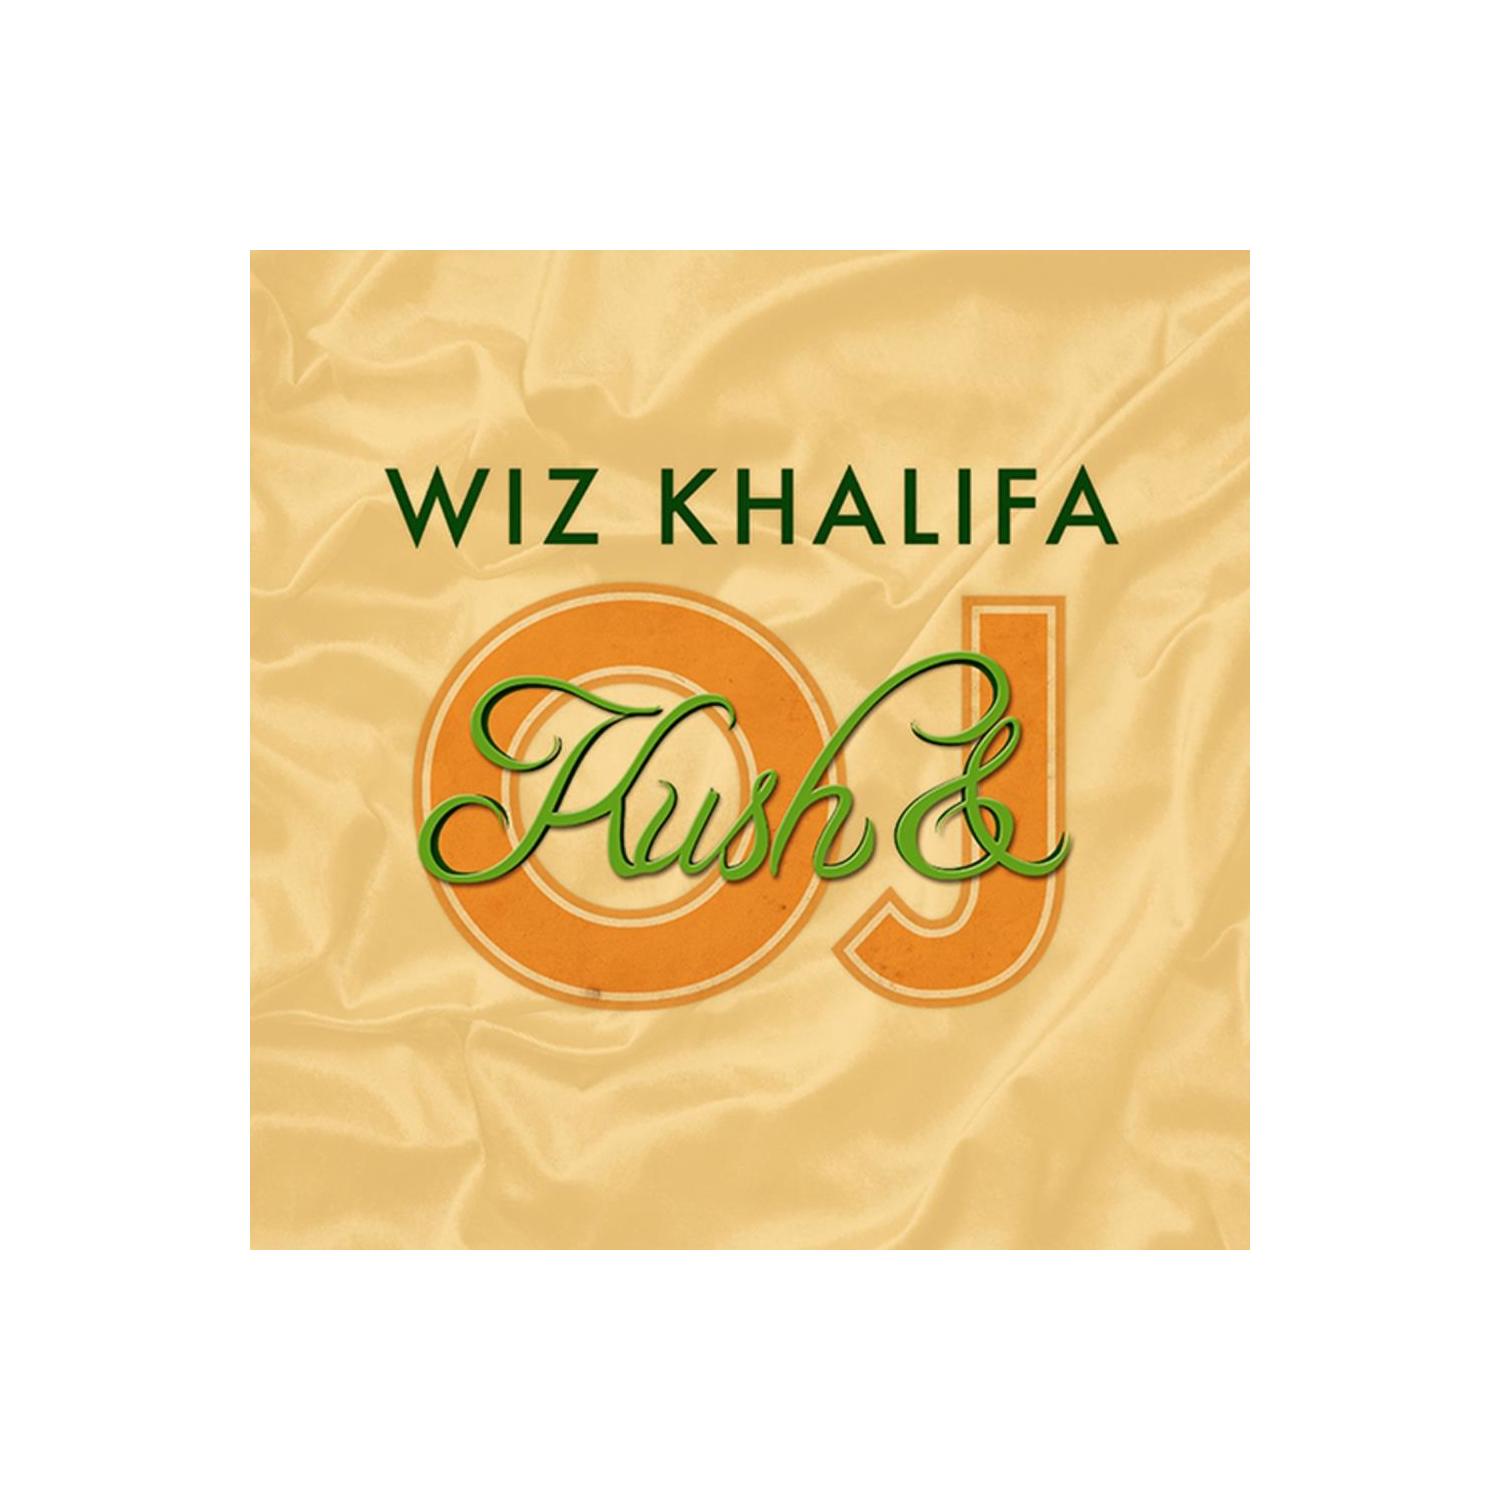 KUSH & ORANGE JUICE  LP -- WIZ KHALIFA